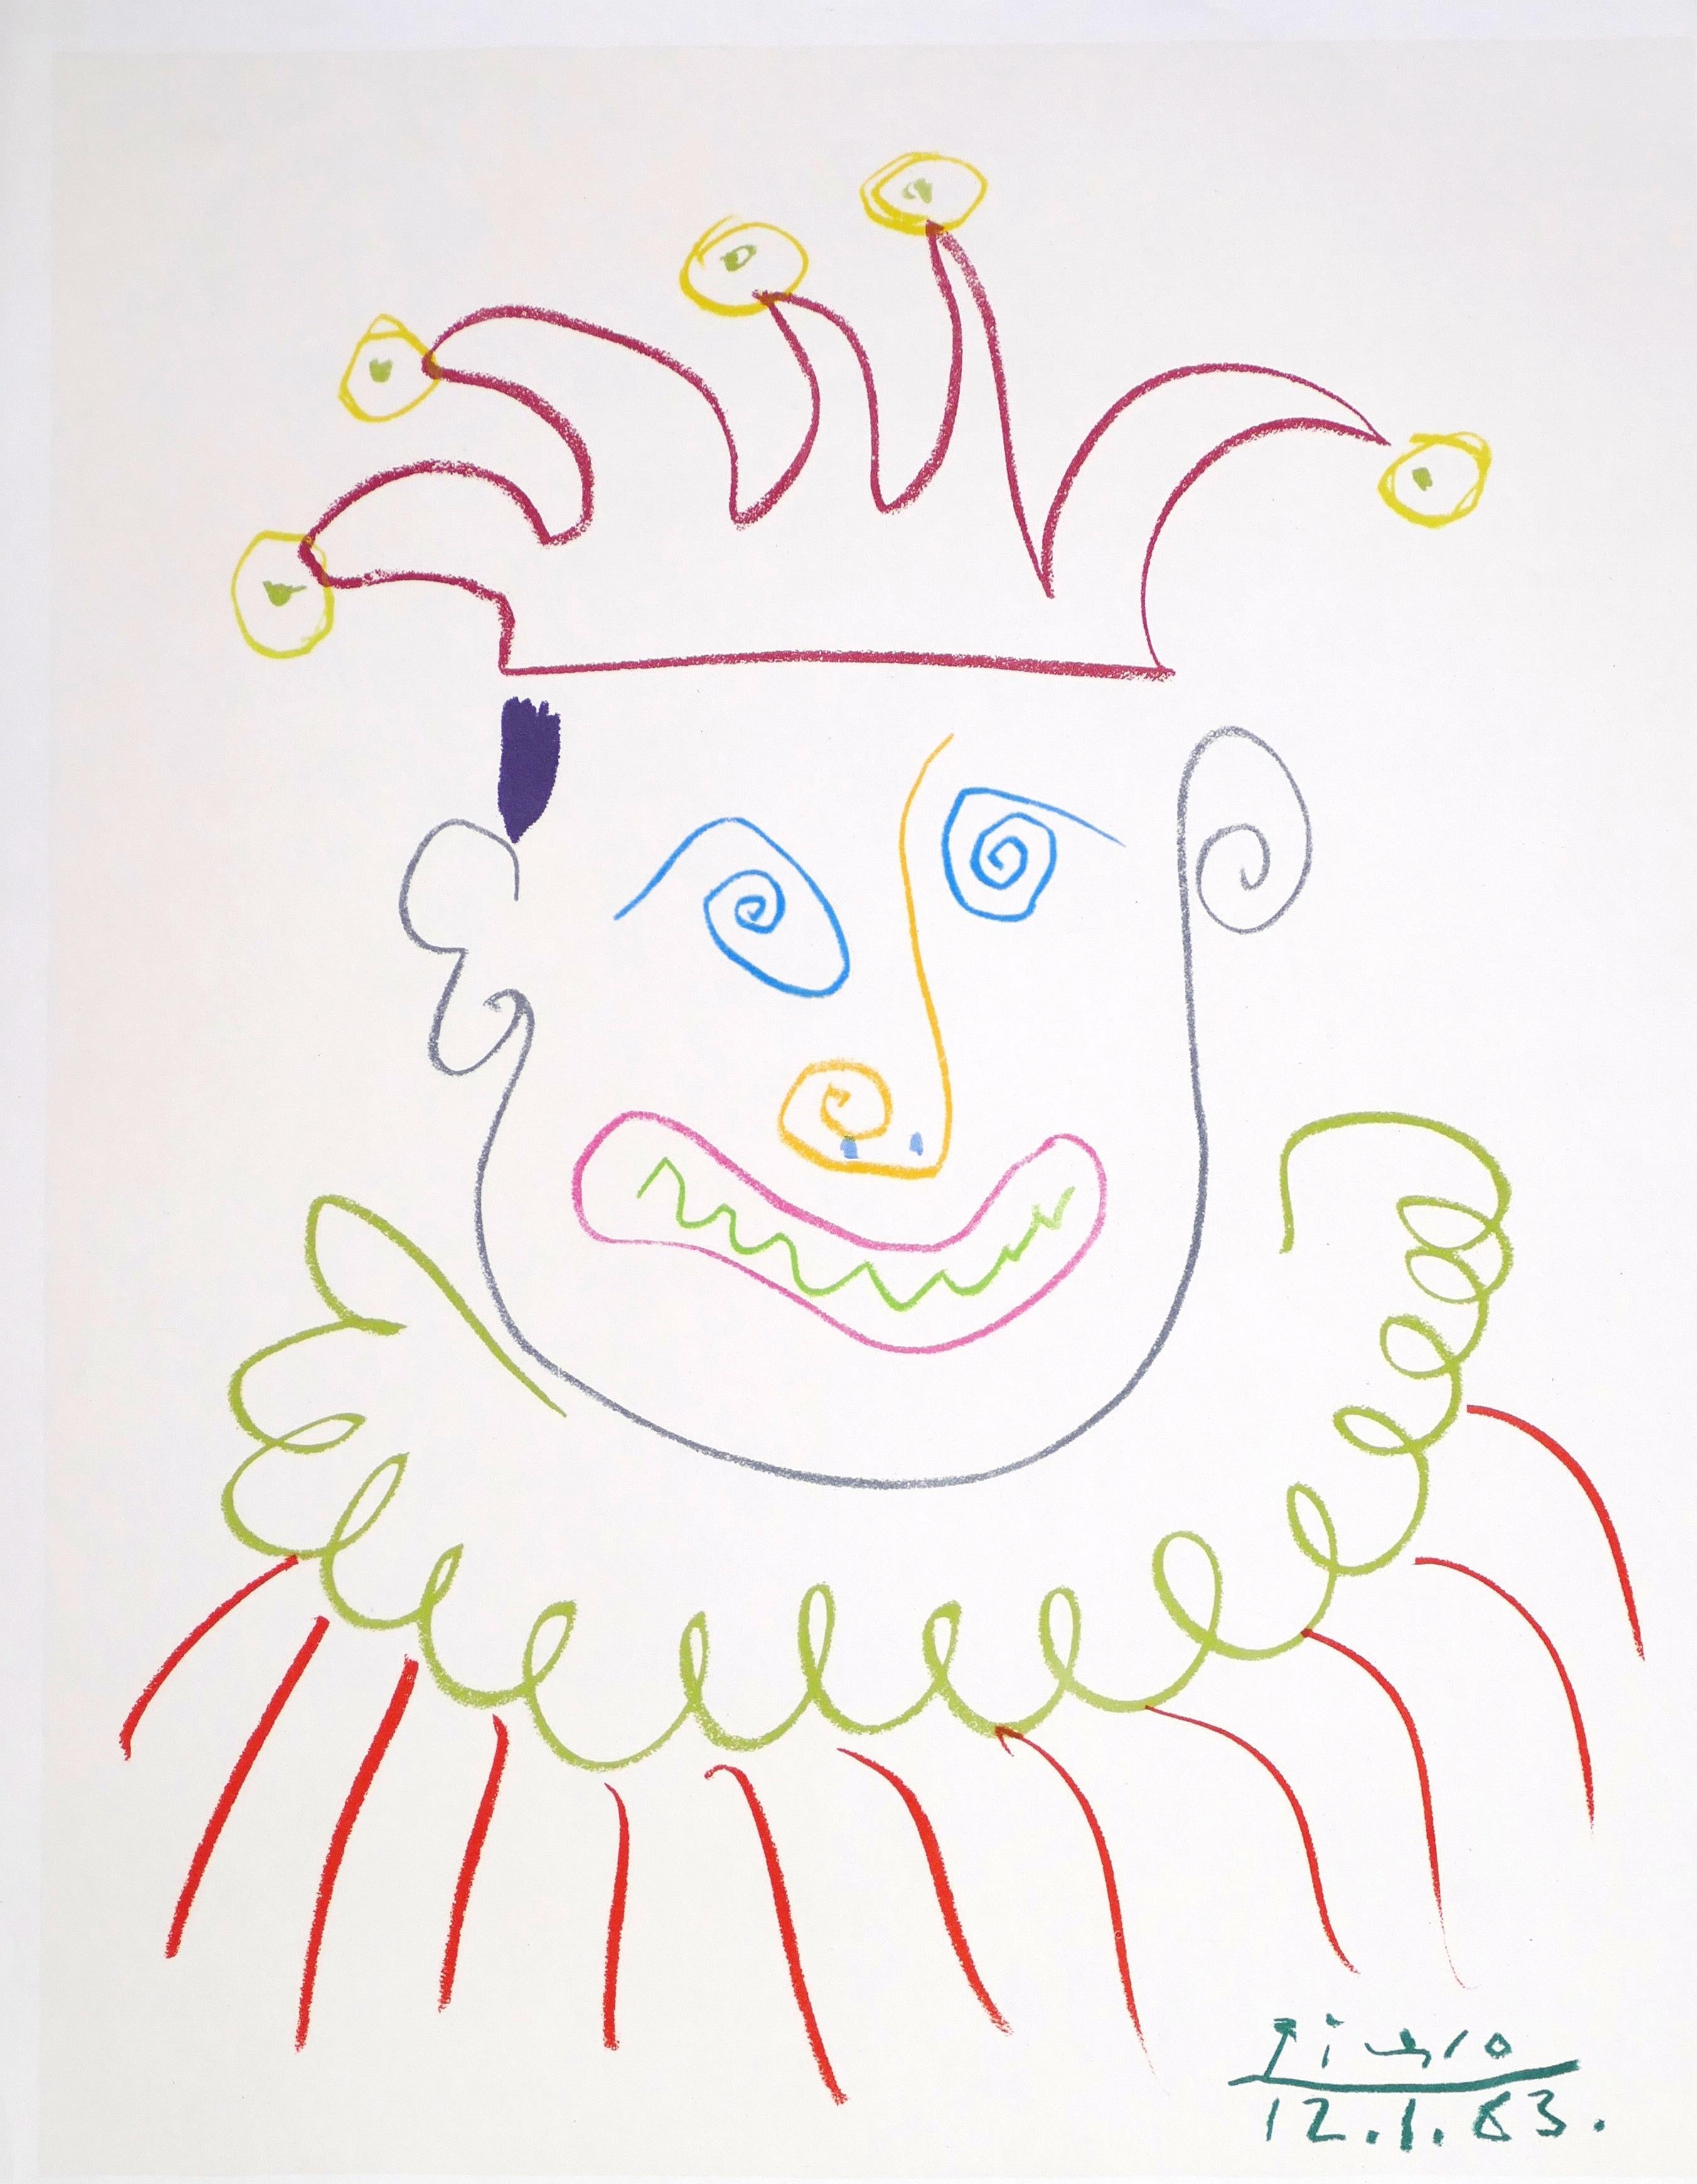 Picasso Vintage Poster Galerie Moderner Kunst der Bücherstube, Köln - 1967 - Cubist Print by (after) Pablo Picasso